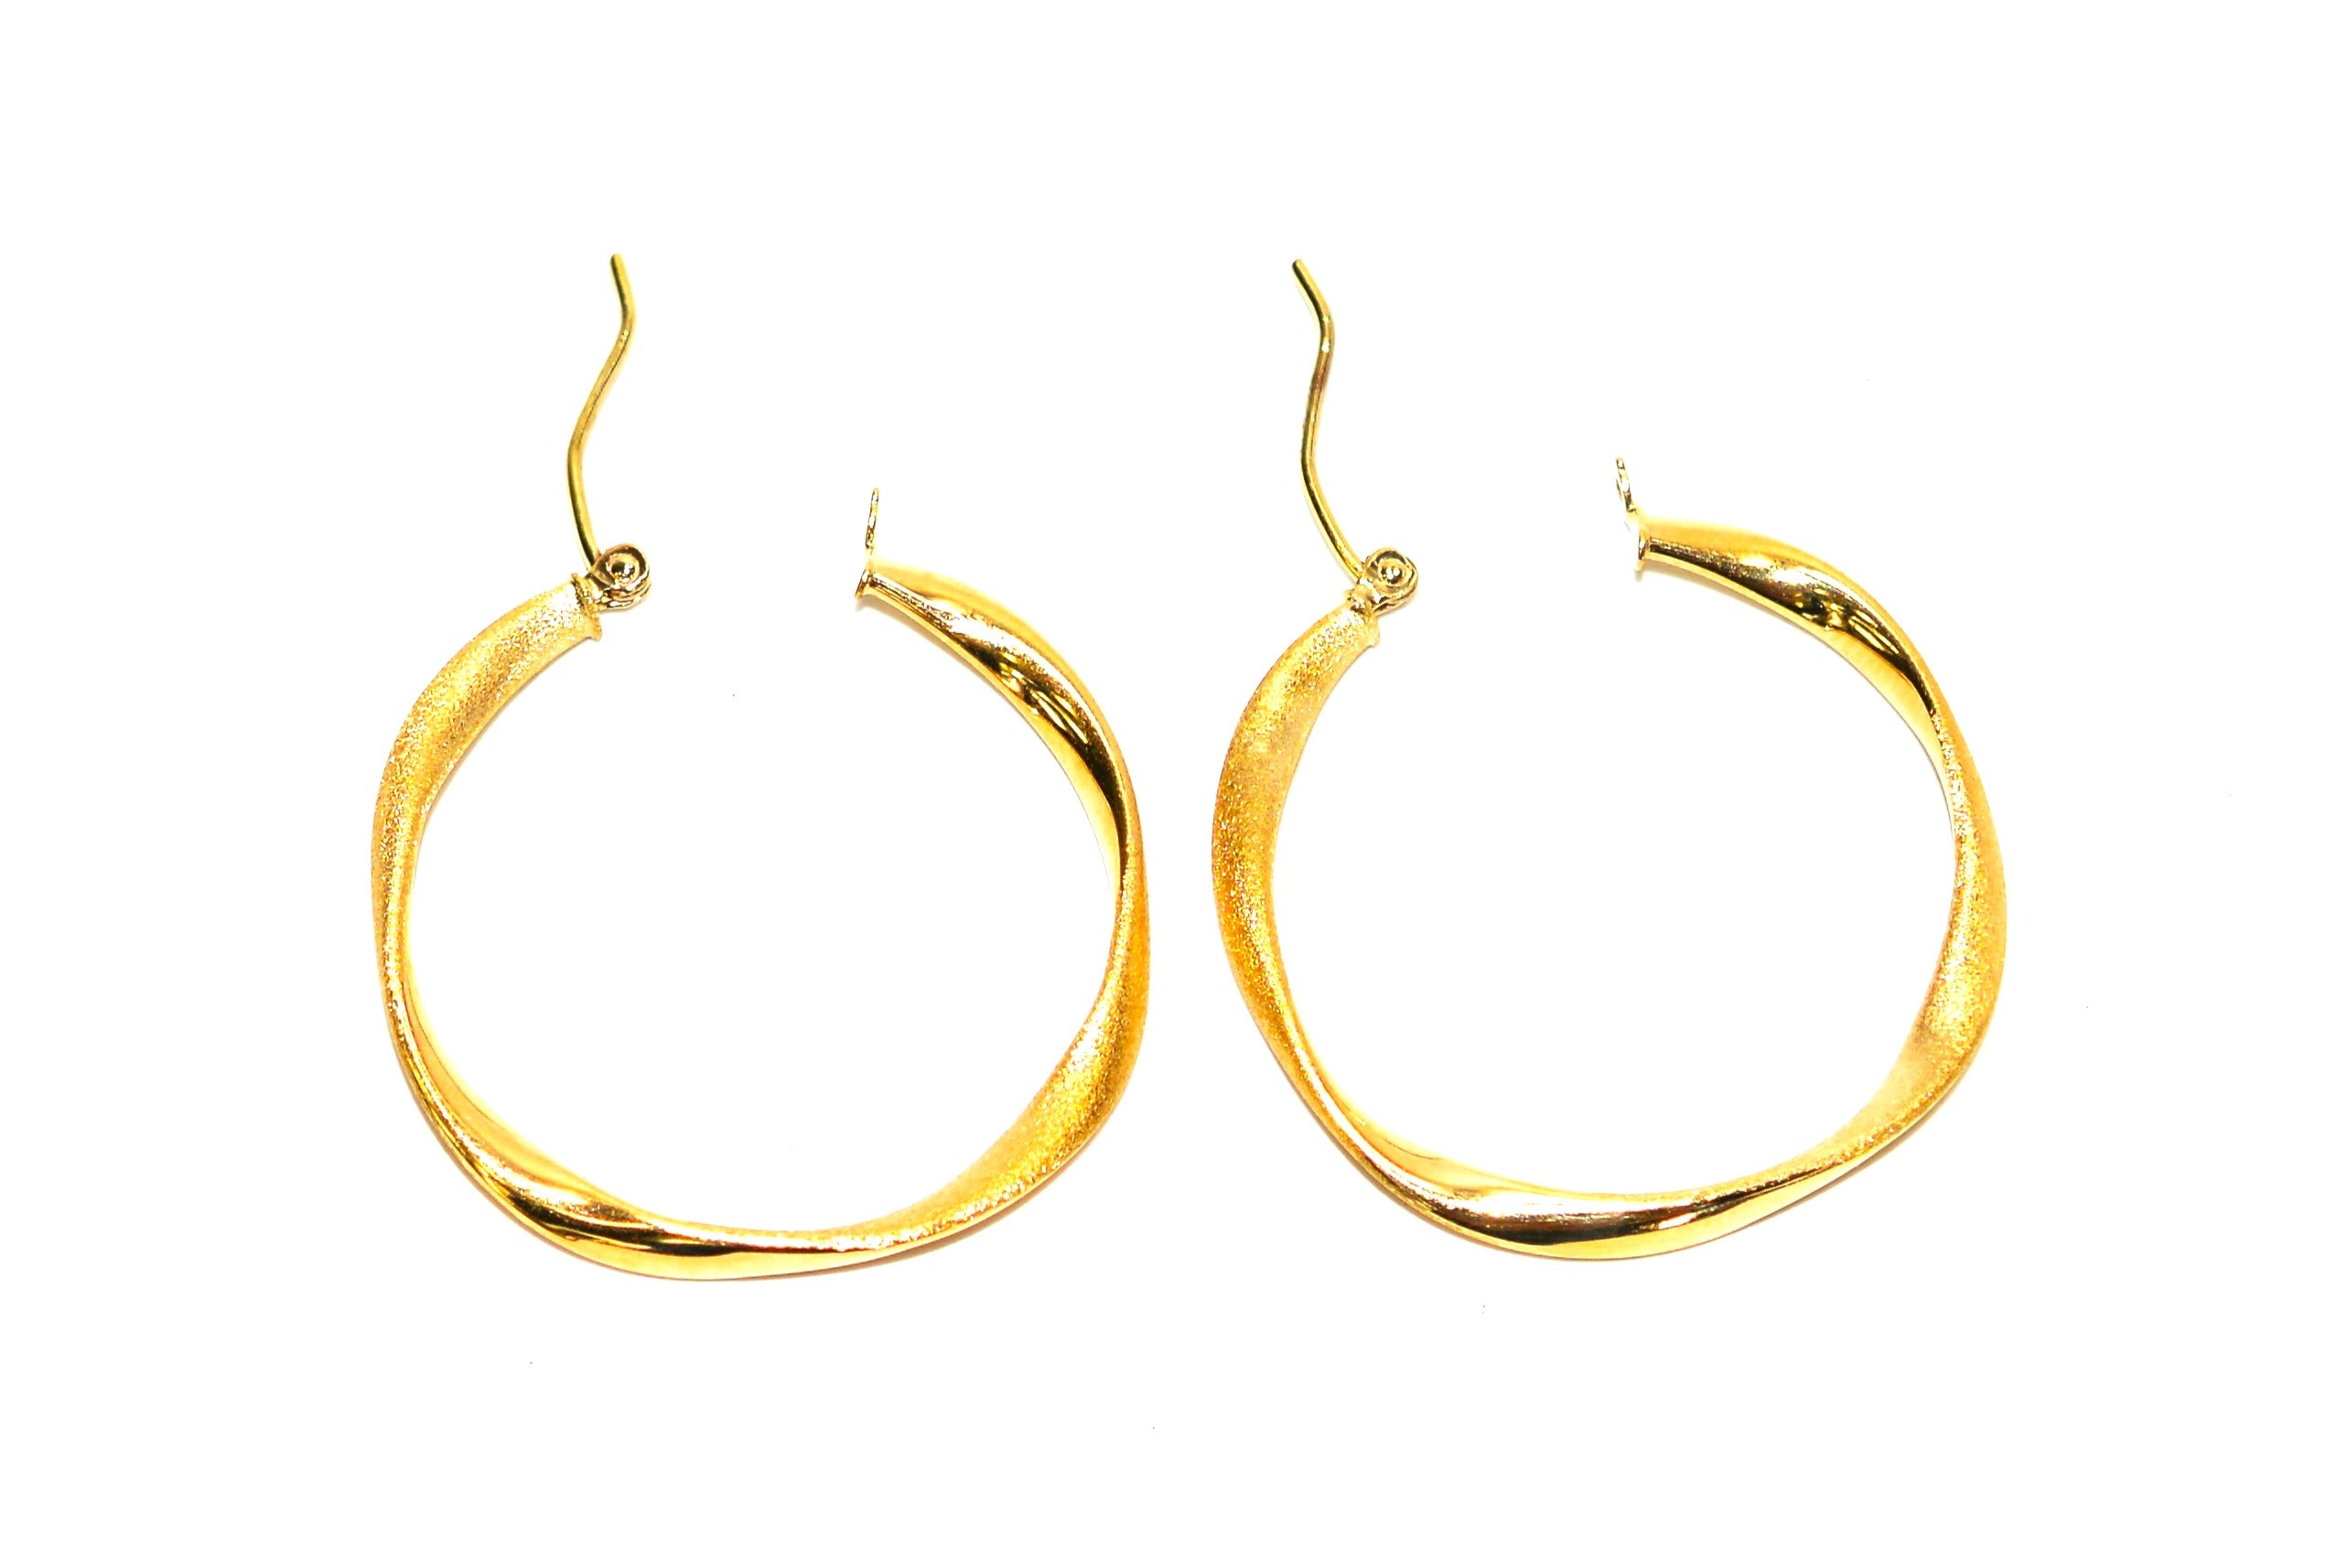 14K Solid Gold 30mm Hoop Earrings Gold Hoops Gold Earrings Twist Medium Hoops Statement Earrings Vintage Earrings Fine Estate Jewellery